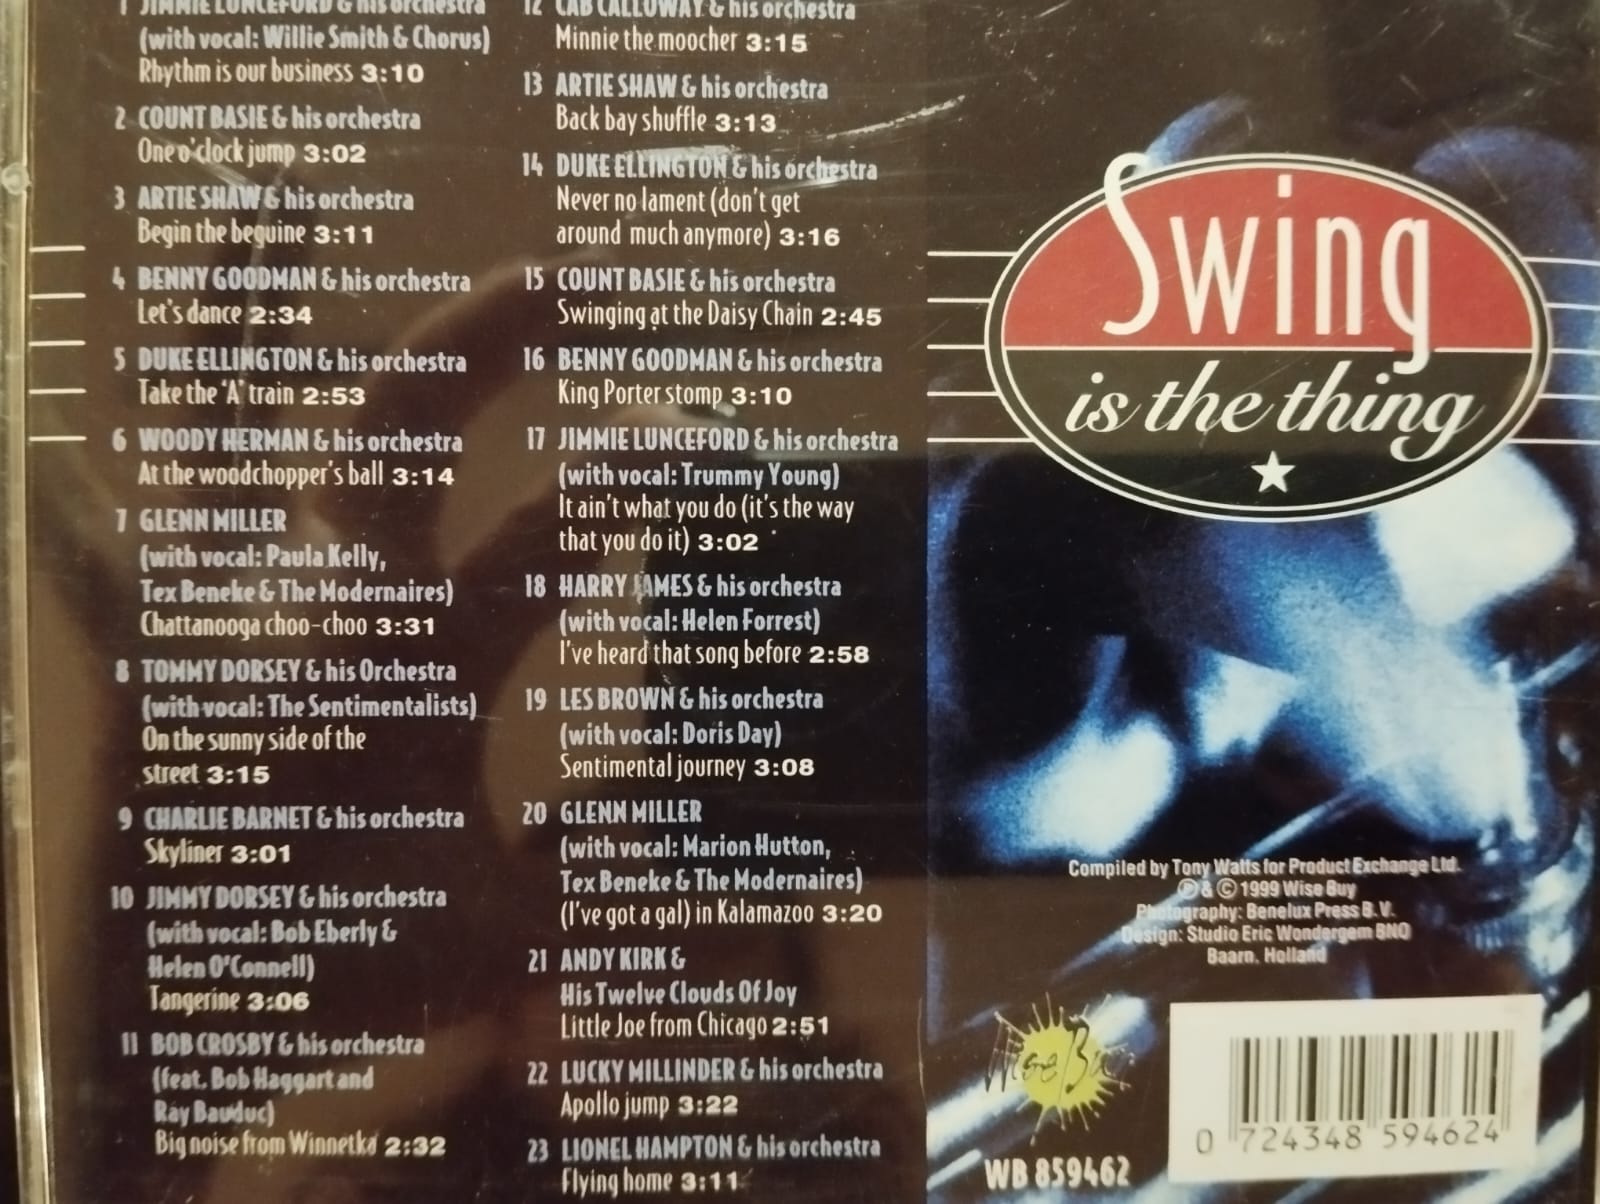 Swing Is The Thing - 1999 Avrupa Basım 2. El  CD Albüm